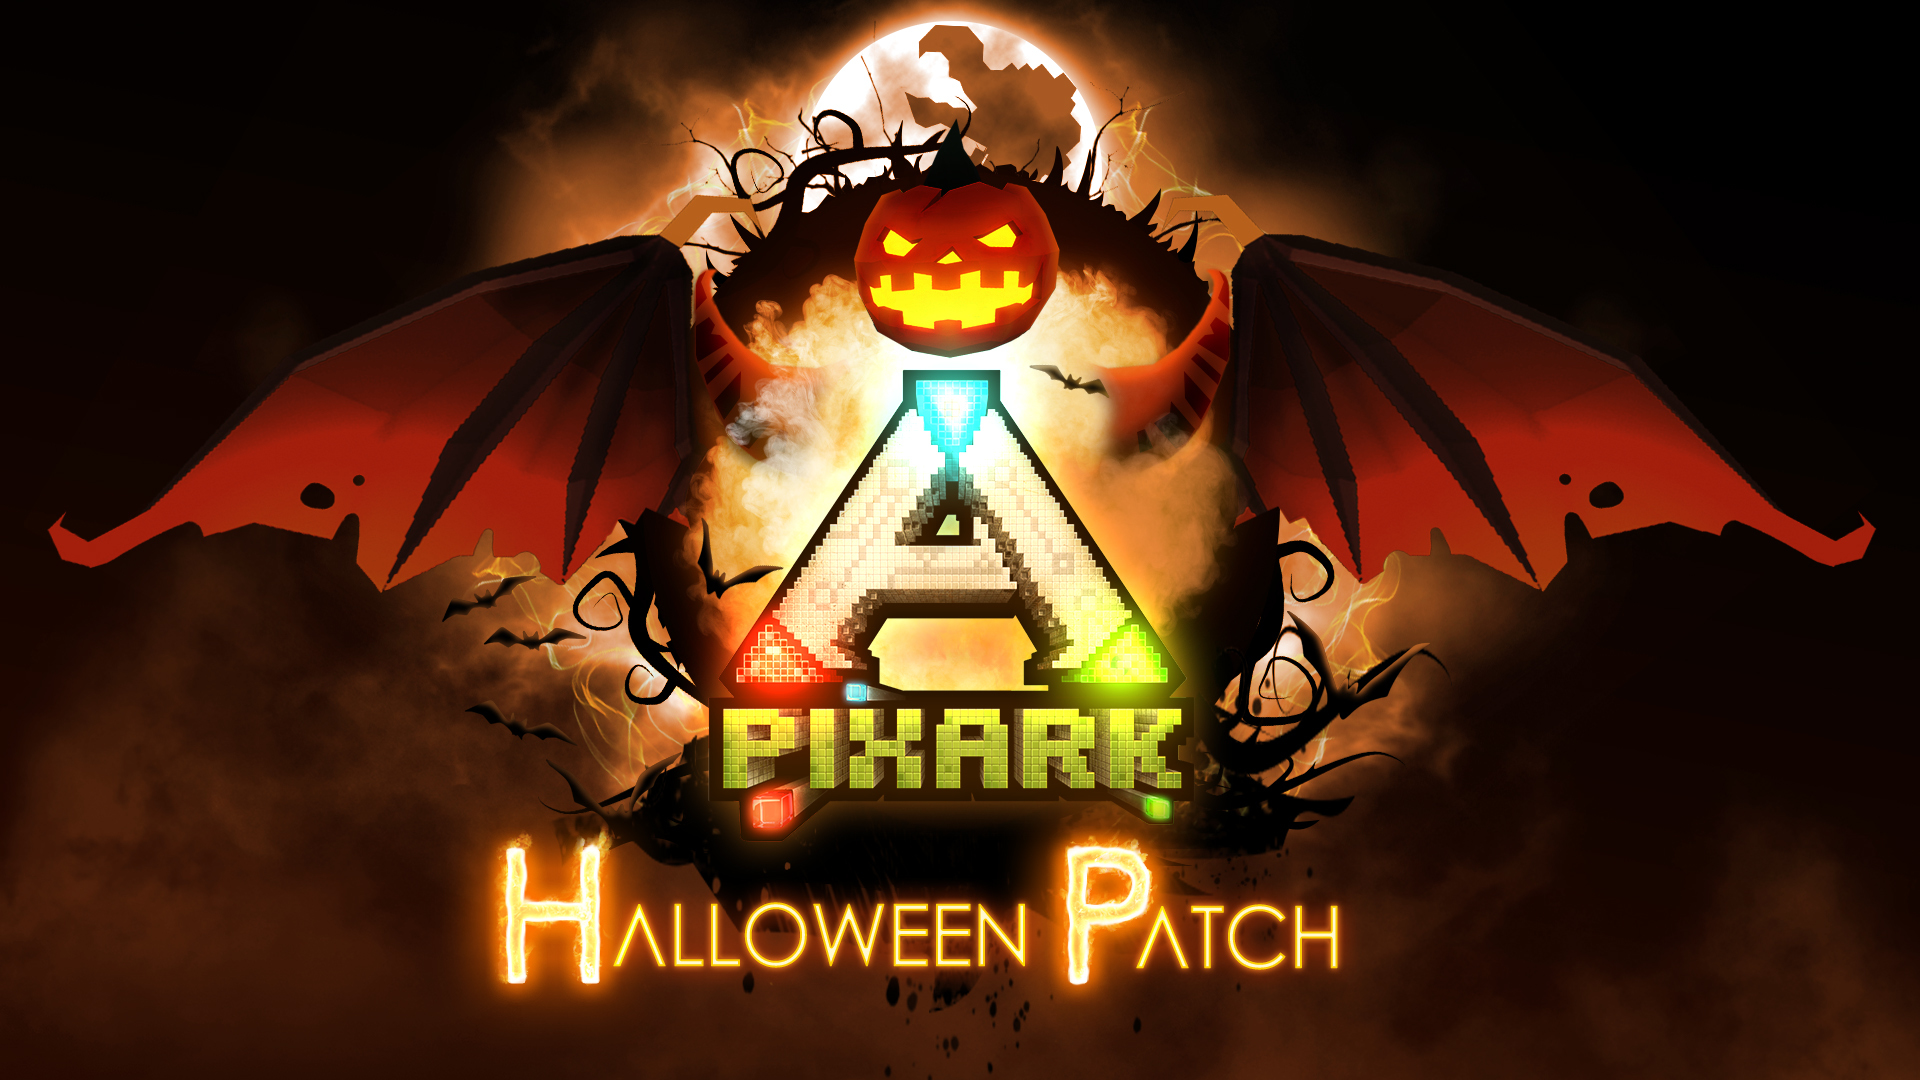 Download Pixark Patch 1 109 Halloween Fun Returns To Pixark Steam News